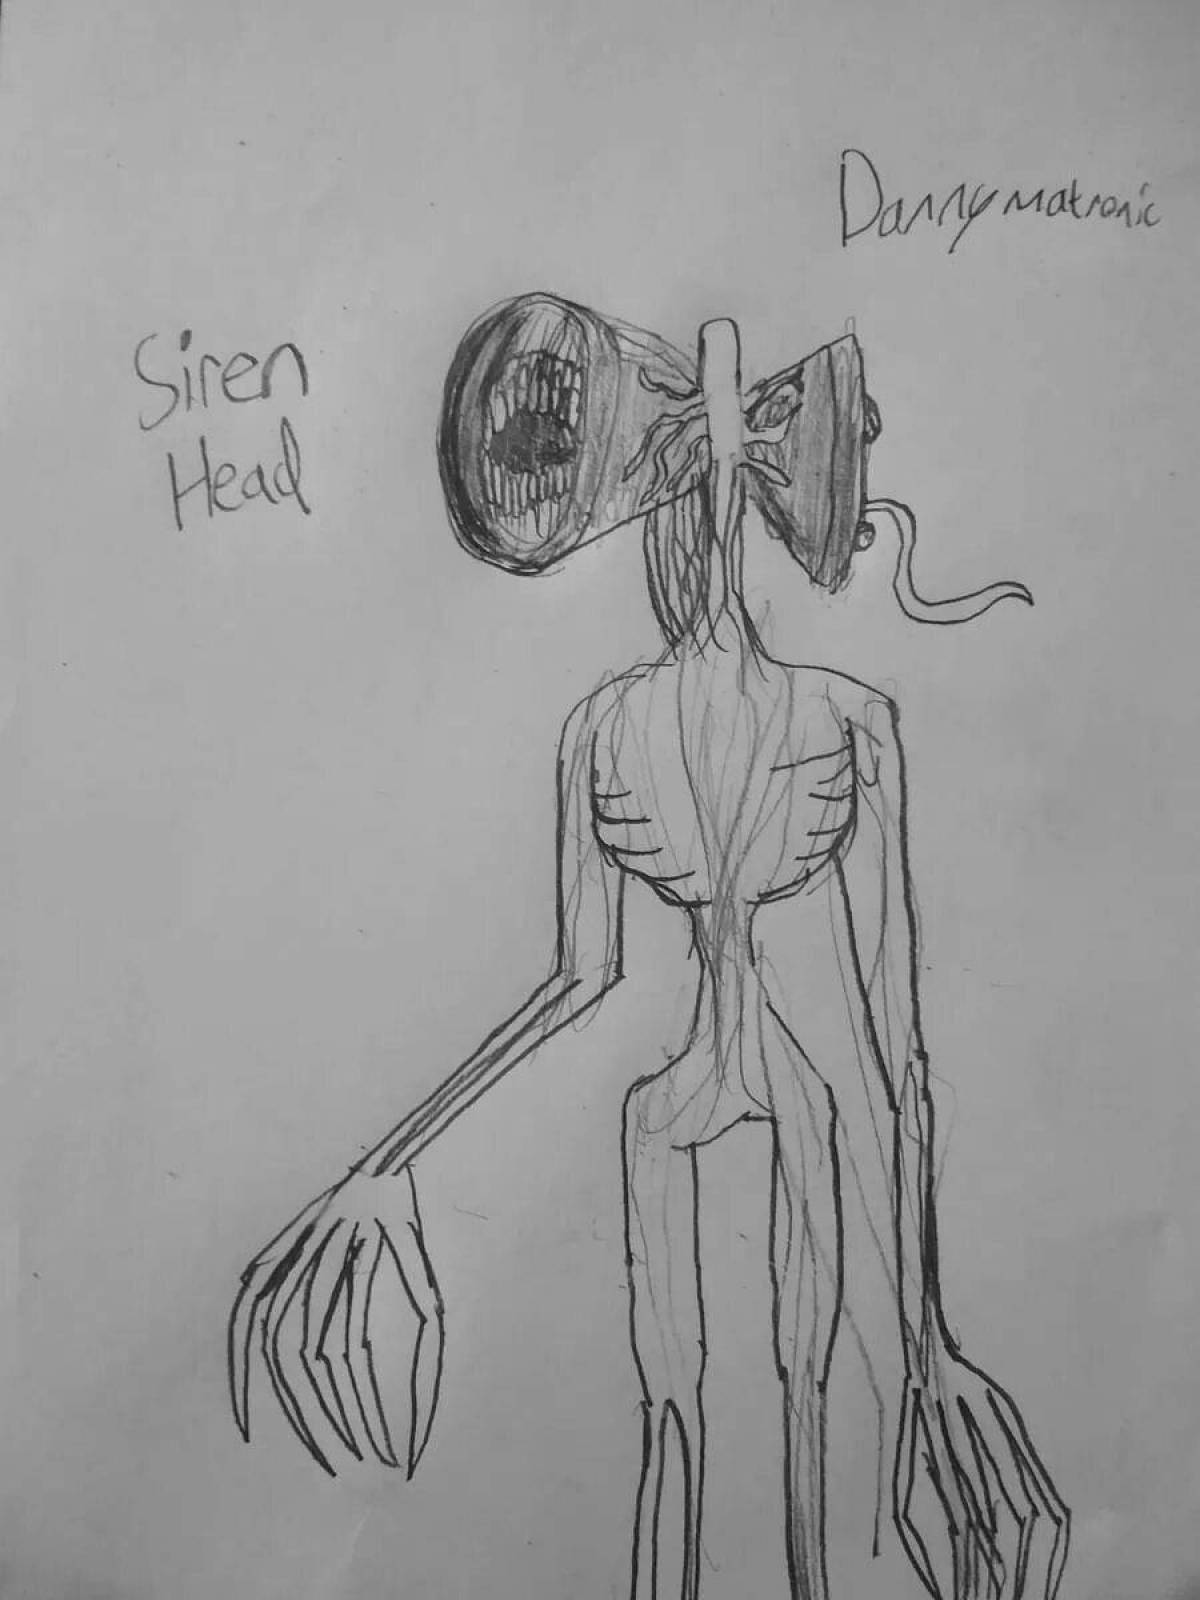 Scary siren head #2